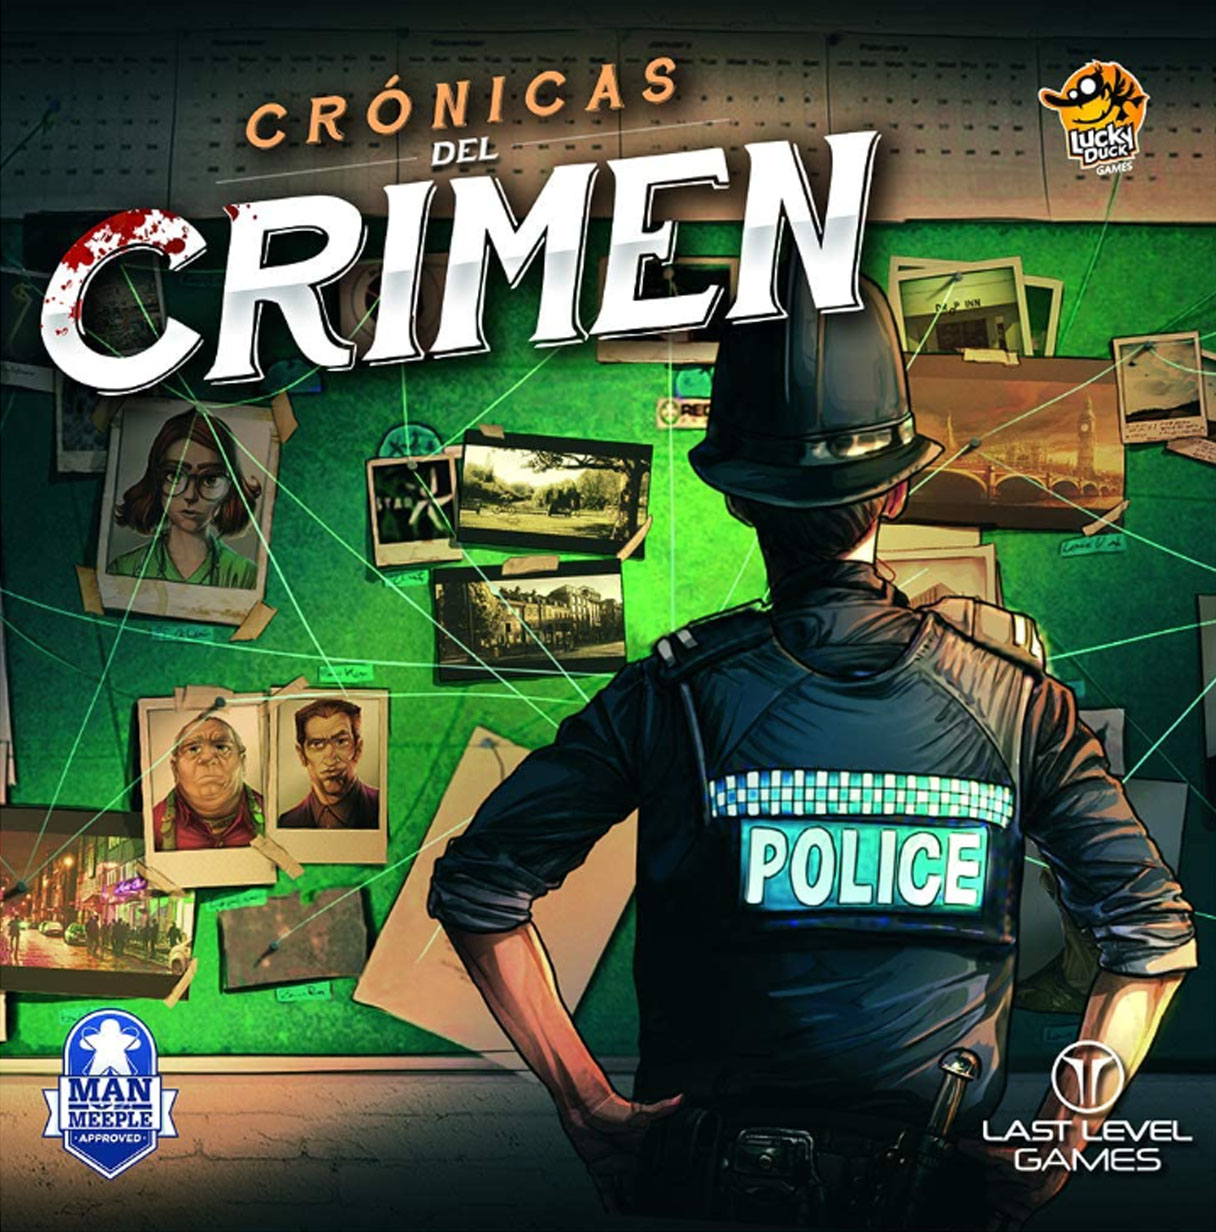 juego cronicas del crimen (last level - bgcronicas)